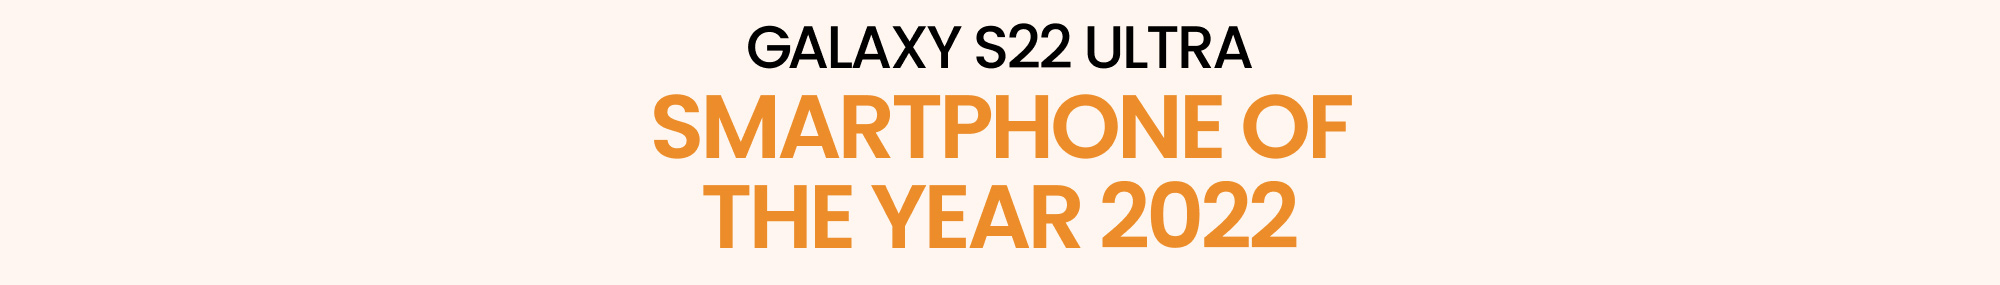 Smartphone 2022: Melihat kembali Galaxy S22 Ultra dan menyapa Galaxy S 2023!  - Gambar 2.